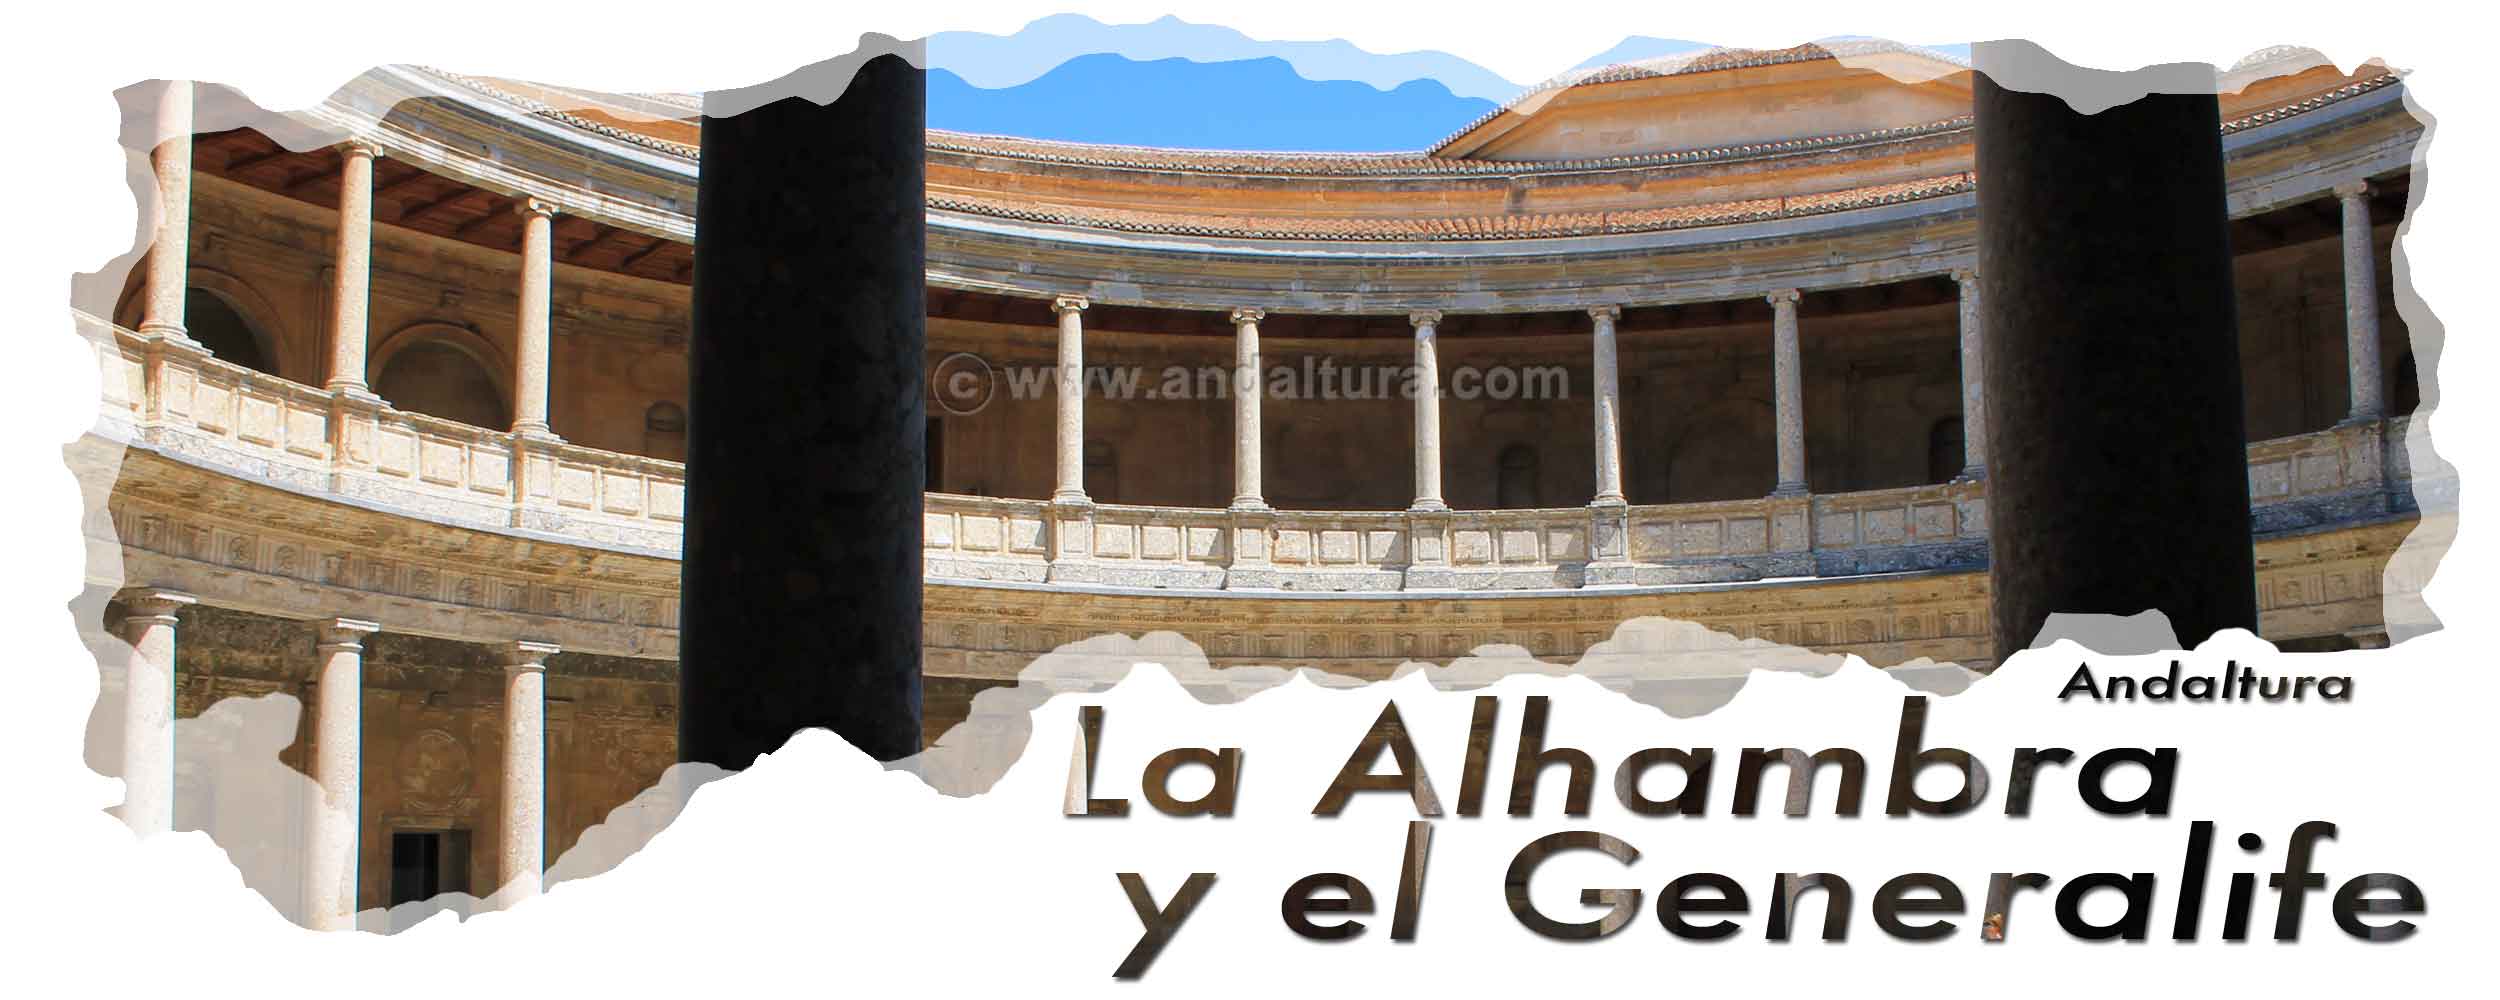 Cabecera de la Torres de la Alhambra - Palacio de Carlos V de la Alhambra